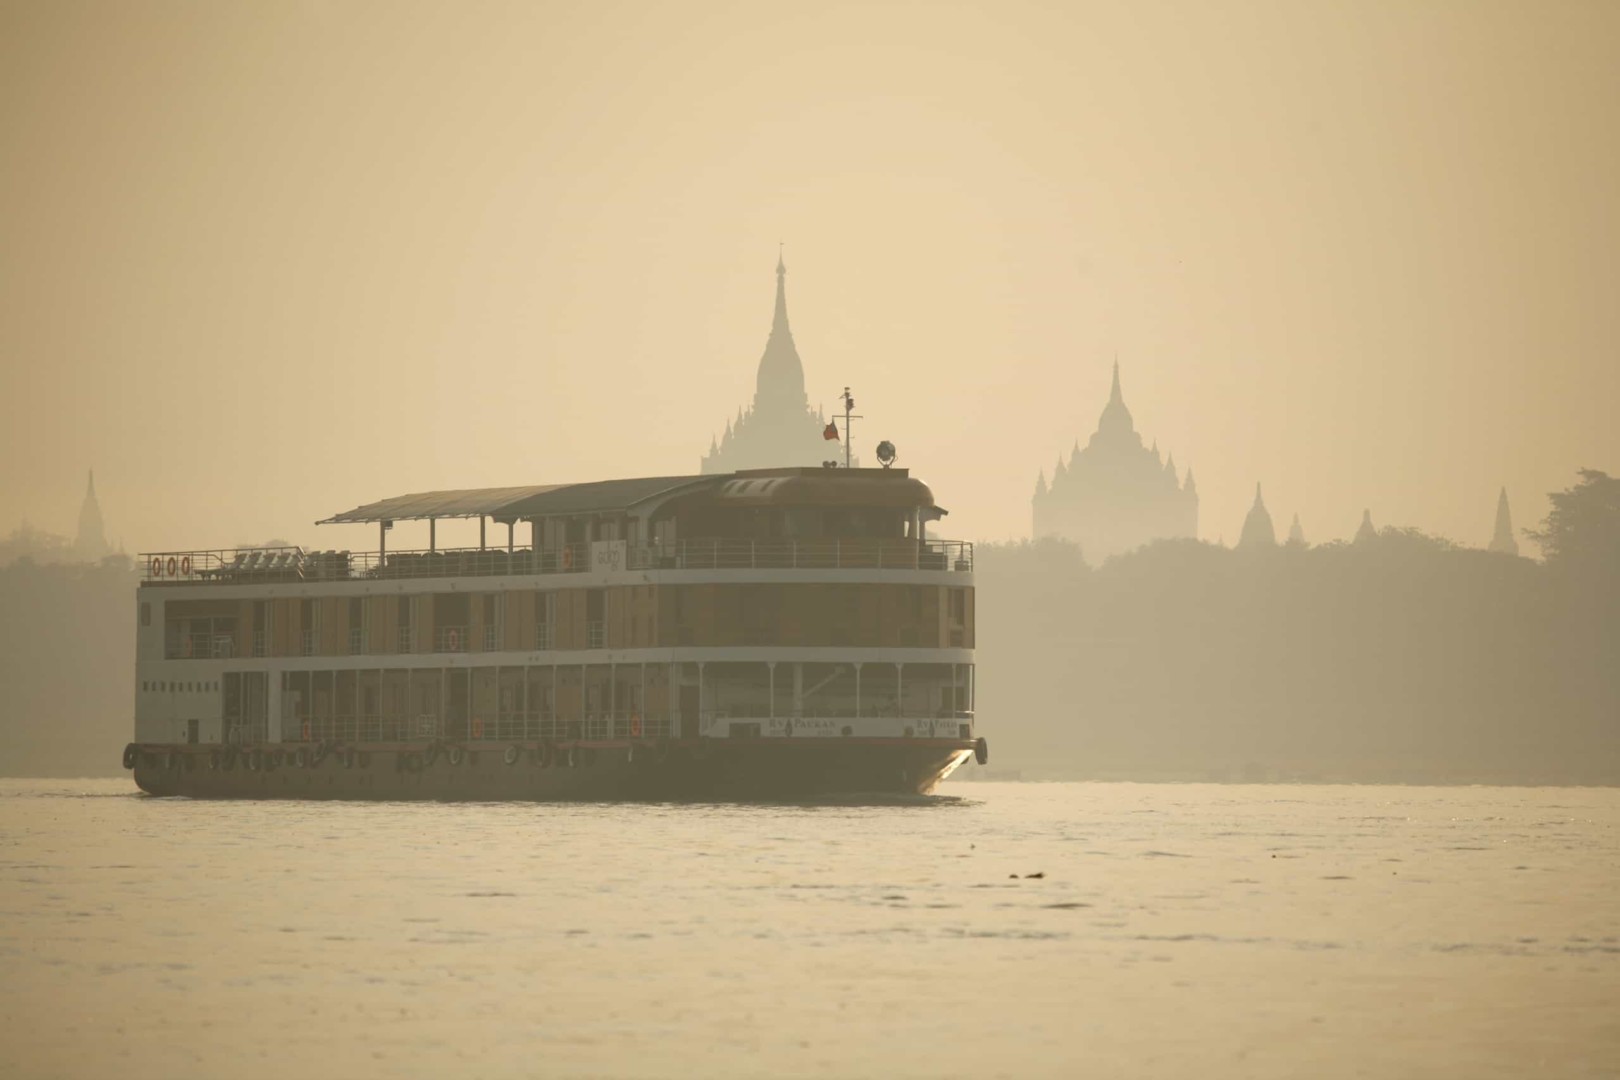 Myanmar River Cruises